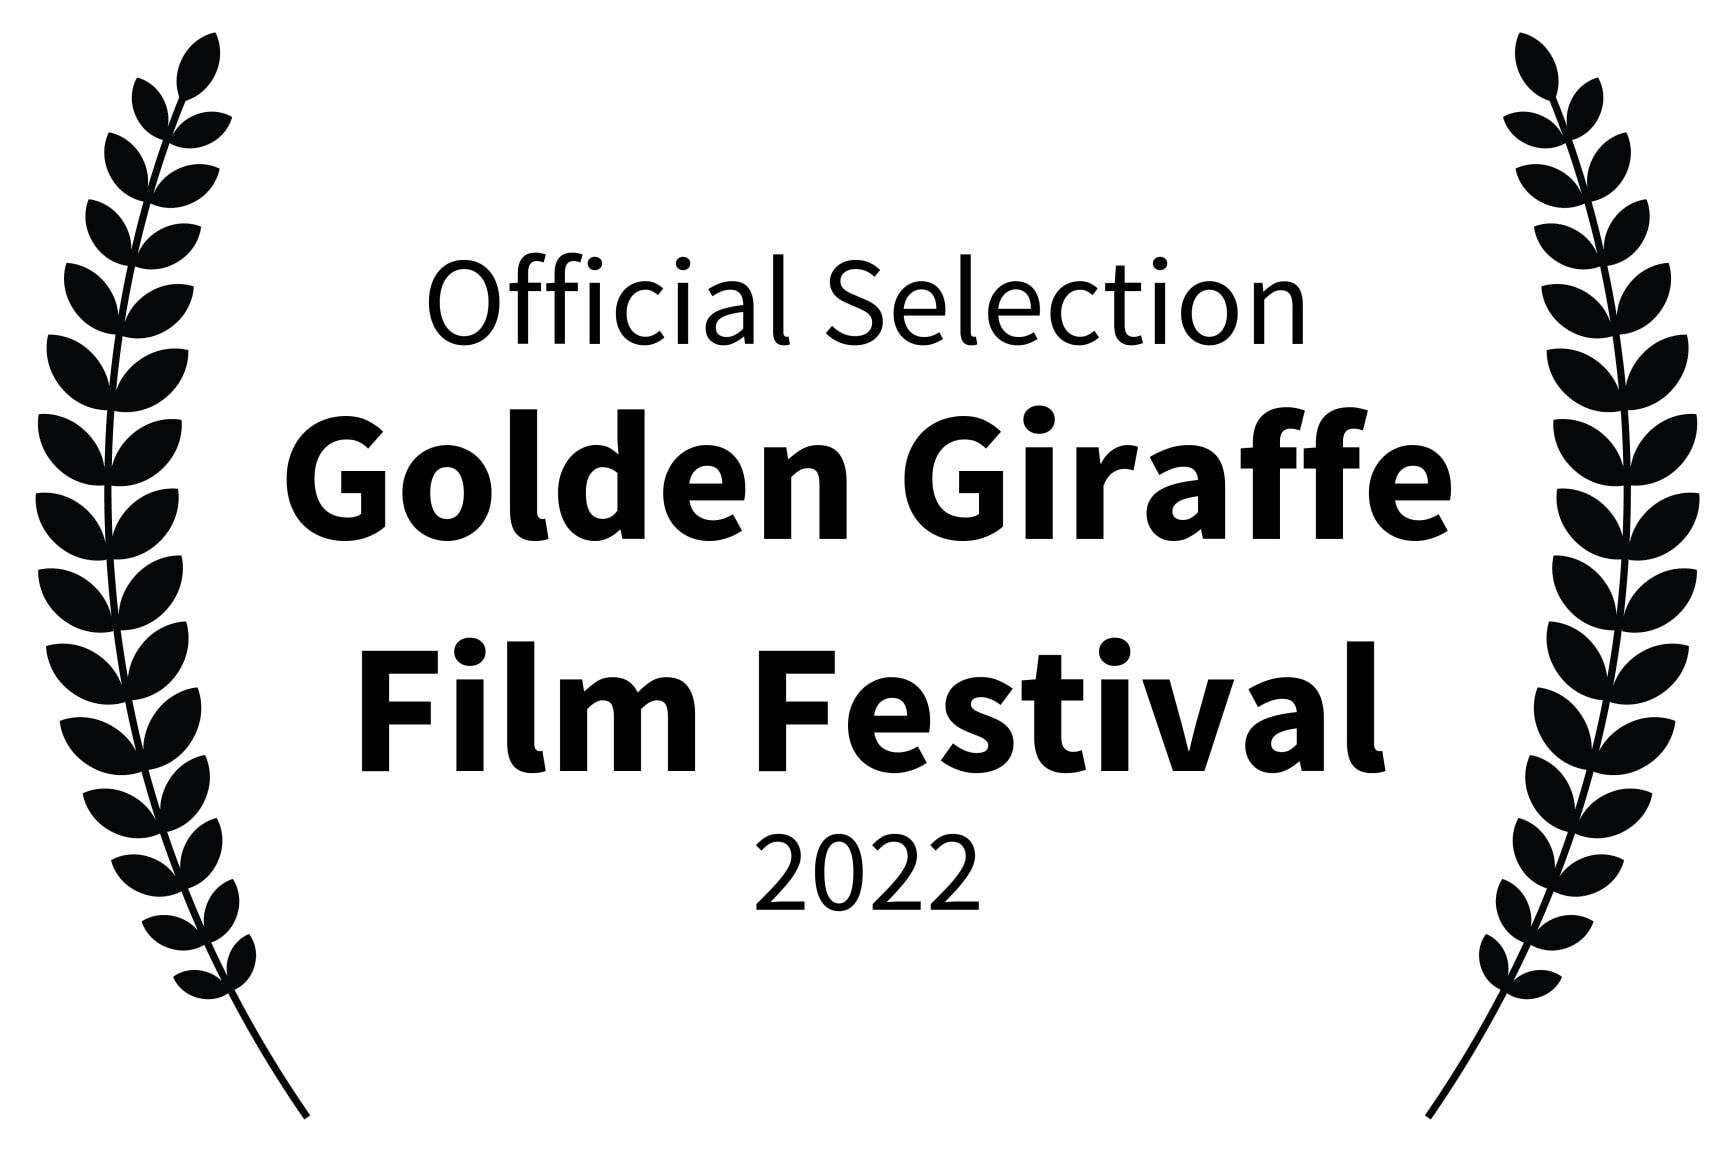 Official Selection - Golden Giraffe Film Festival - 2022